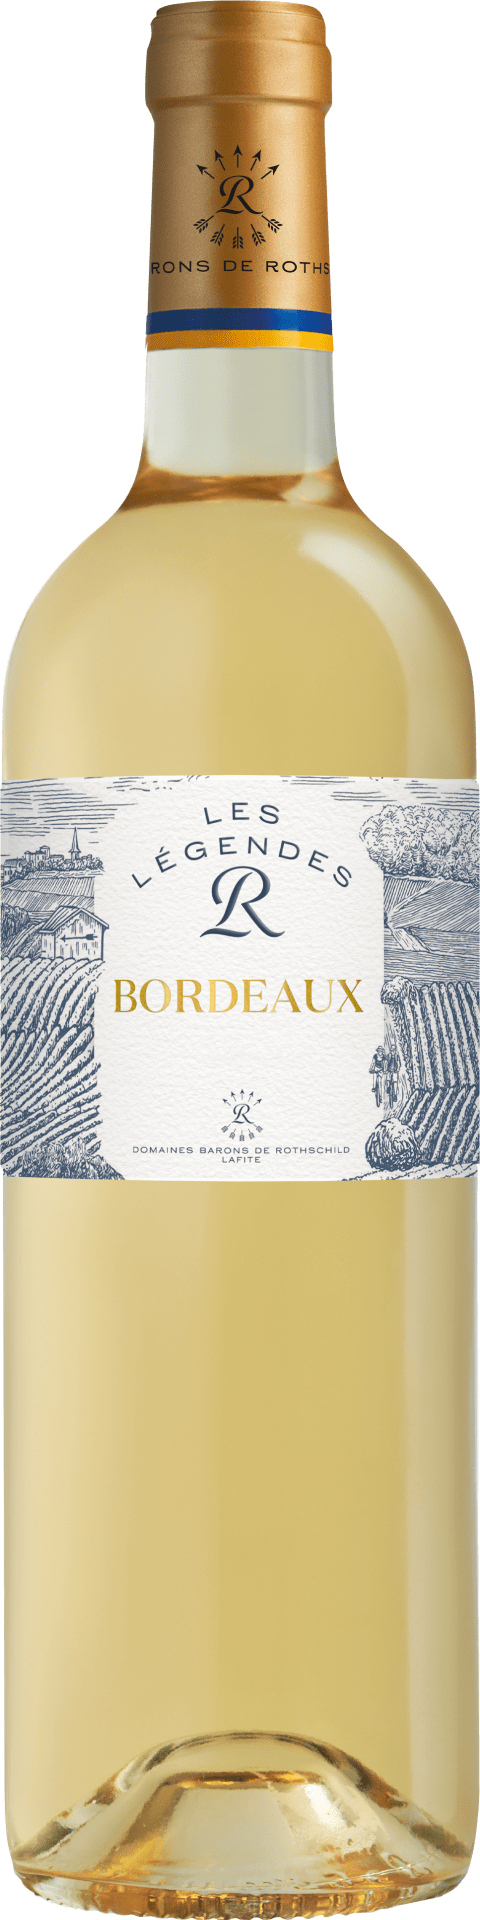 Les Légendes R Bordeaux blanc